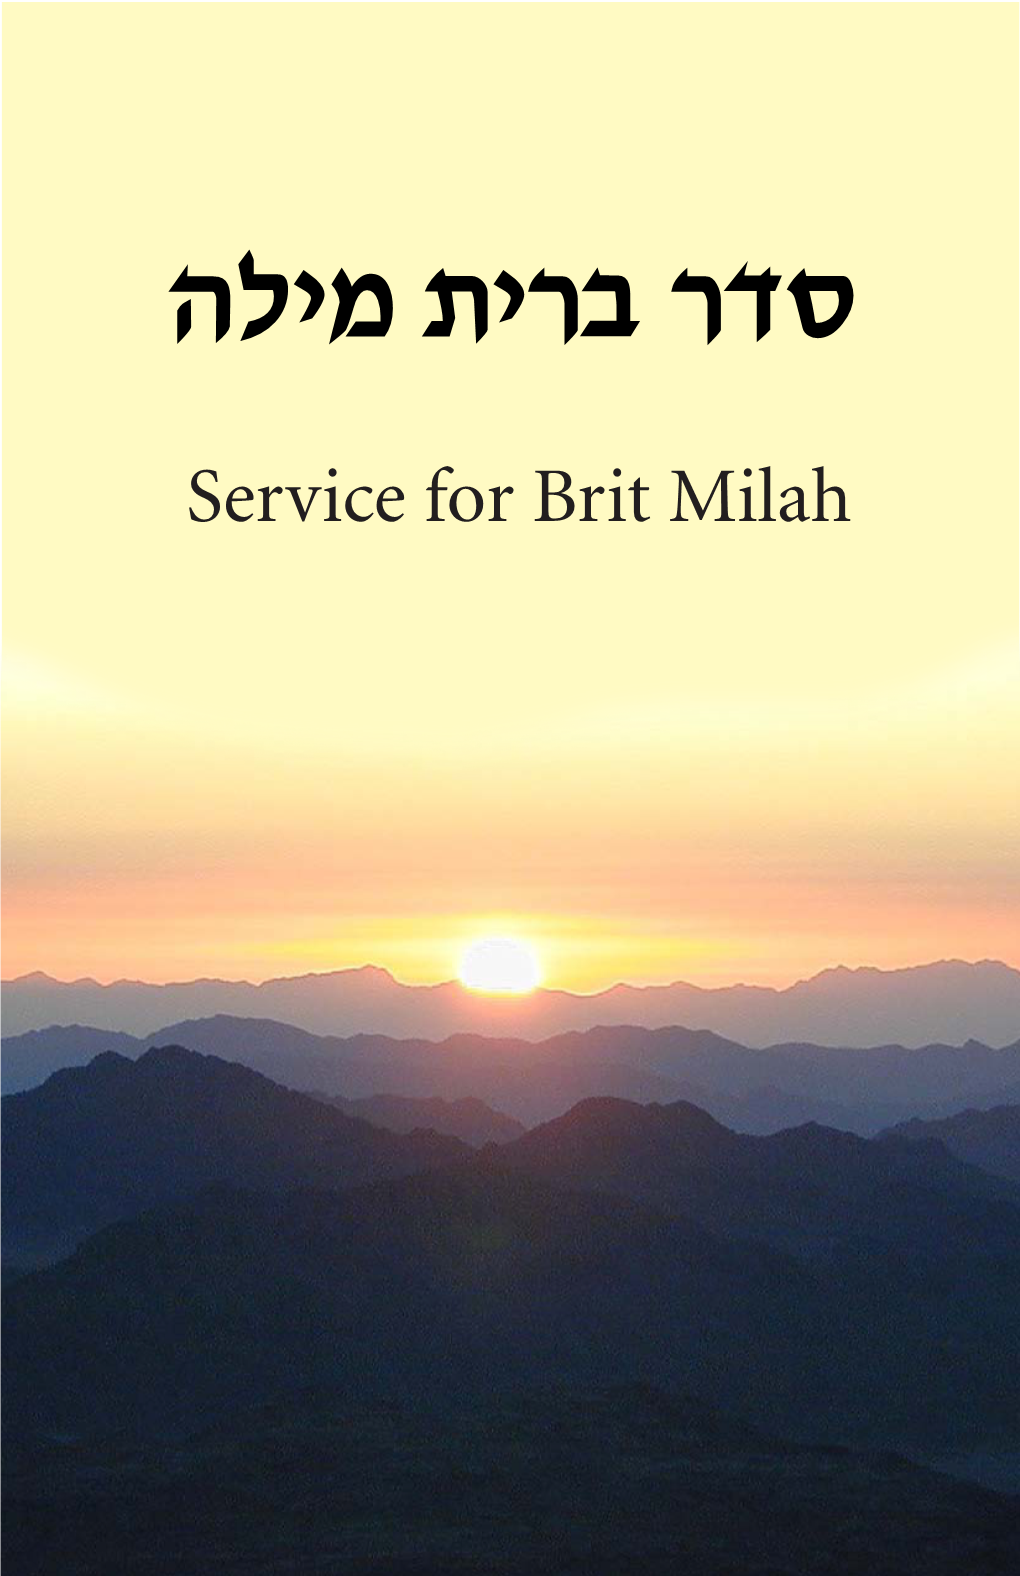 Service for Brit Milah